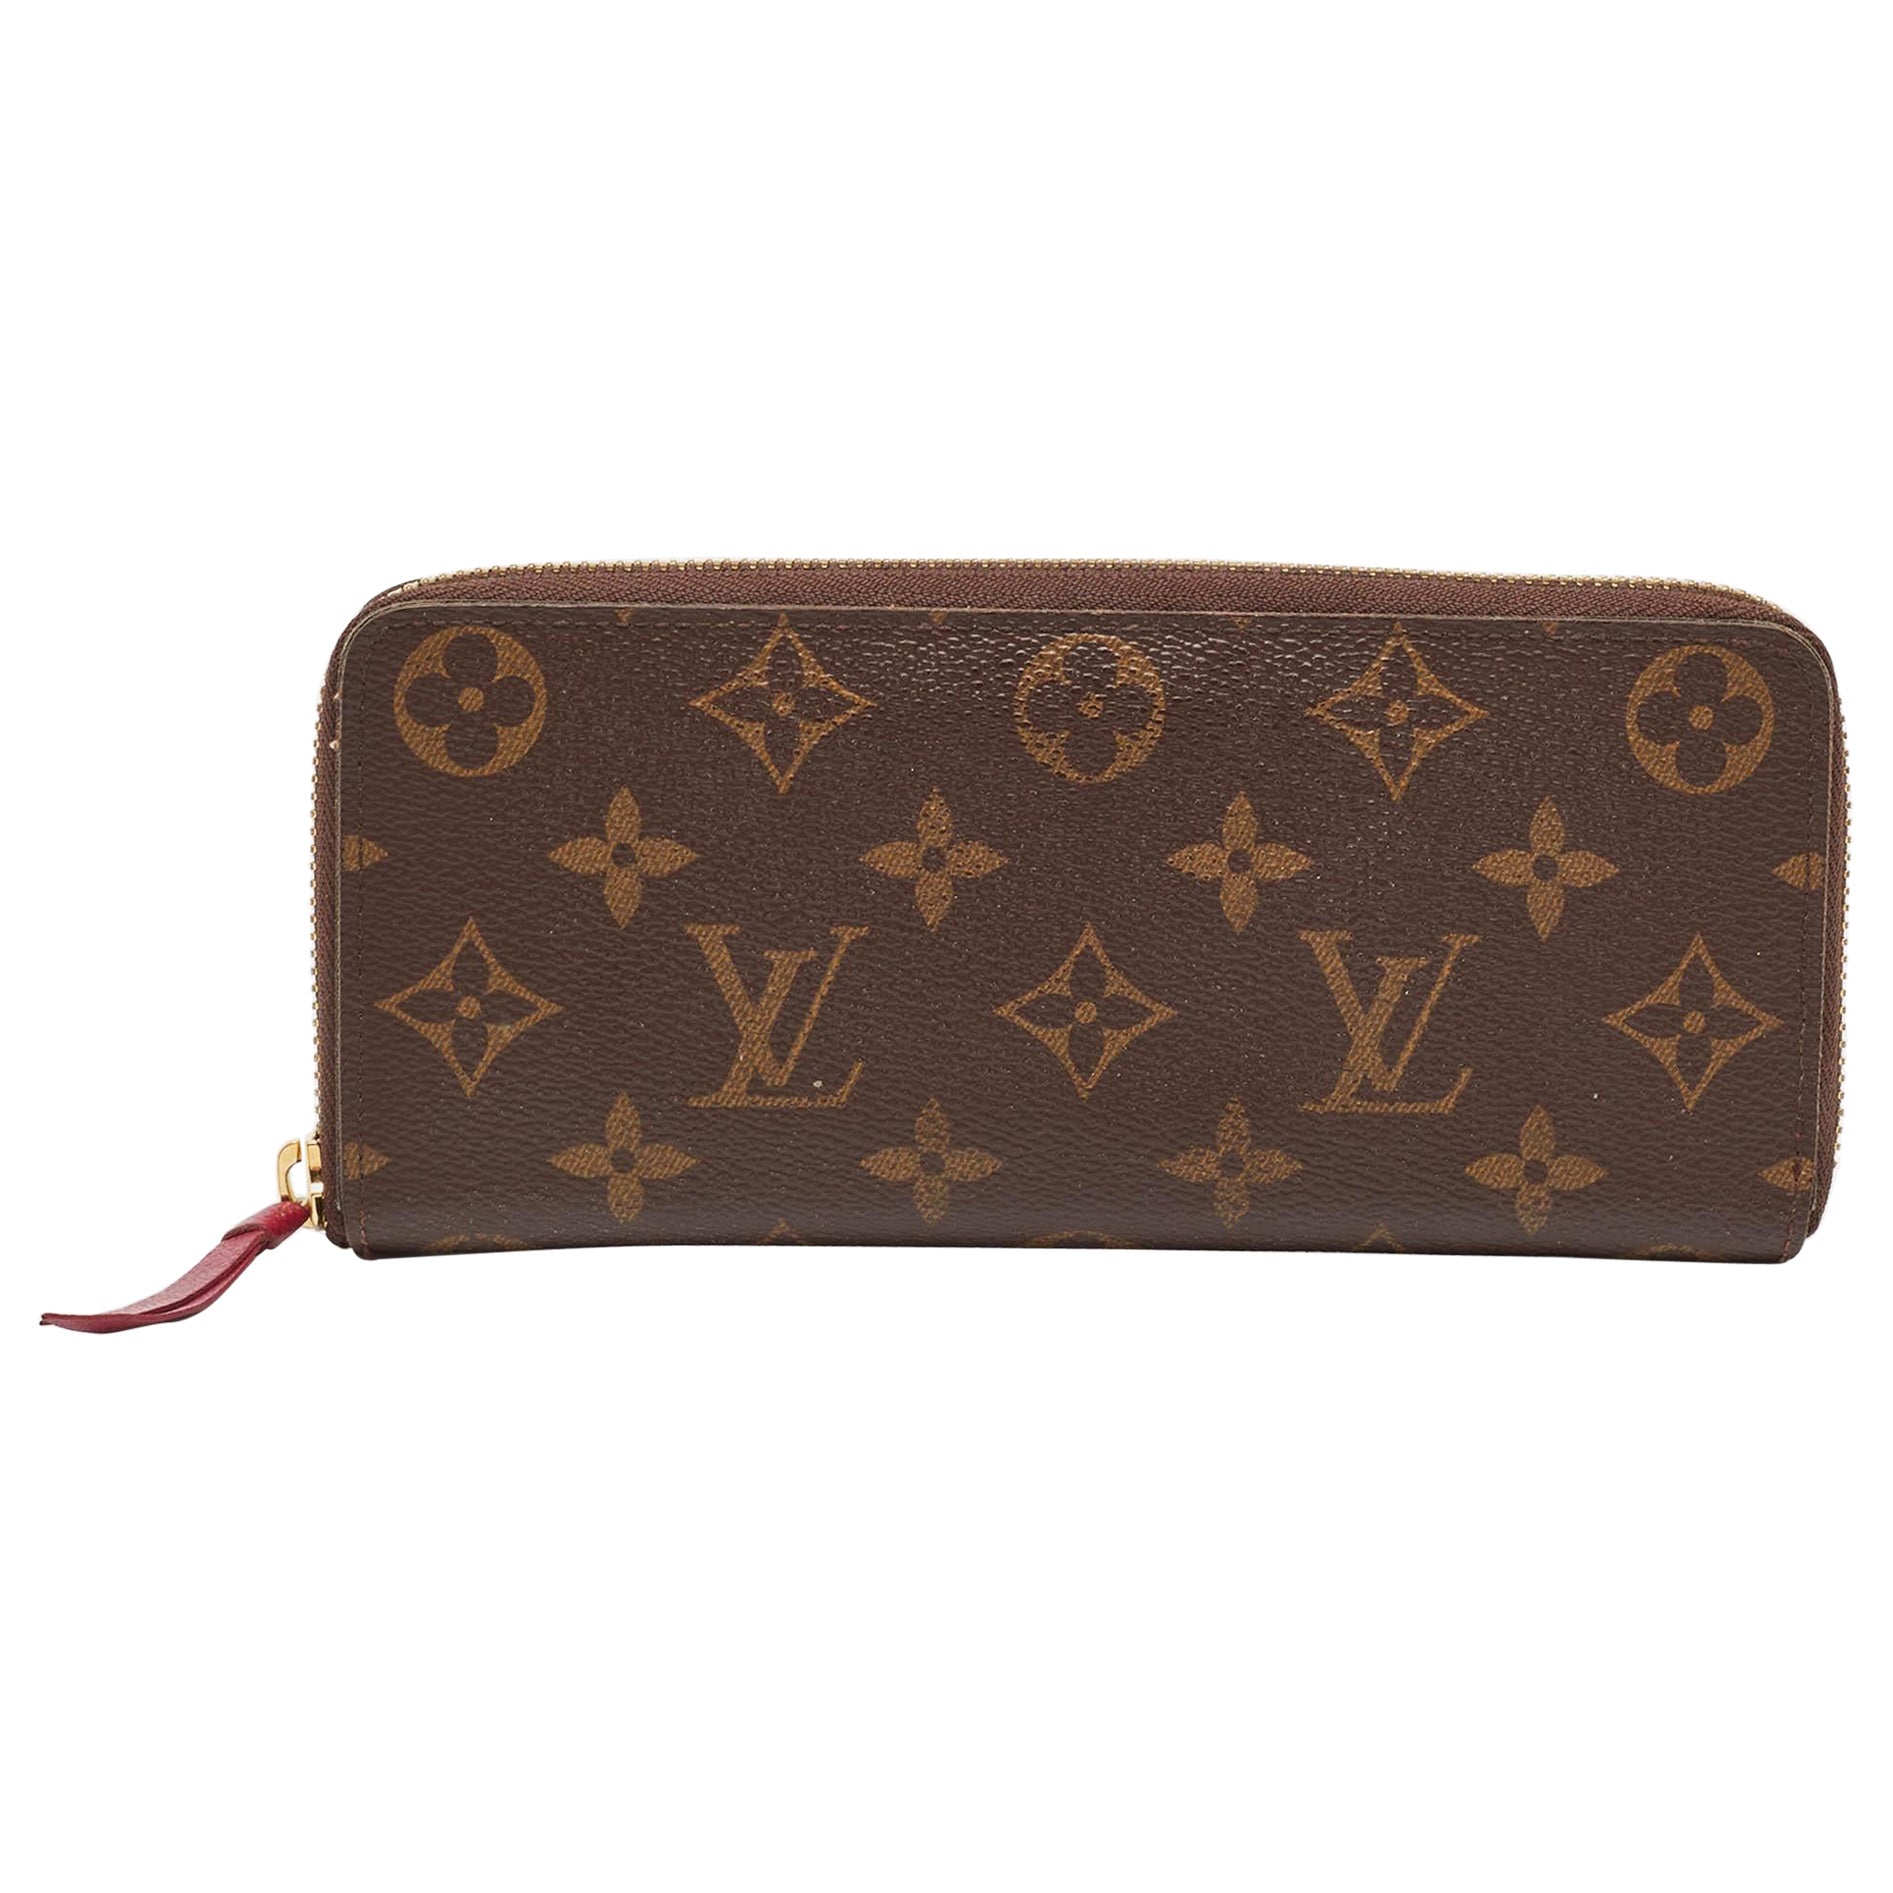 How do I authenticate a Louis Vuitton wallet?